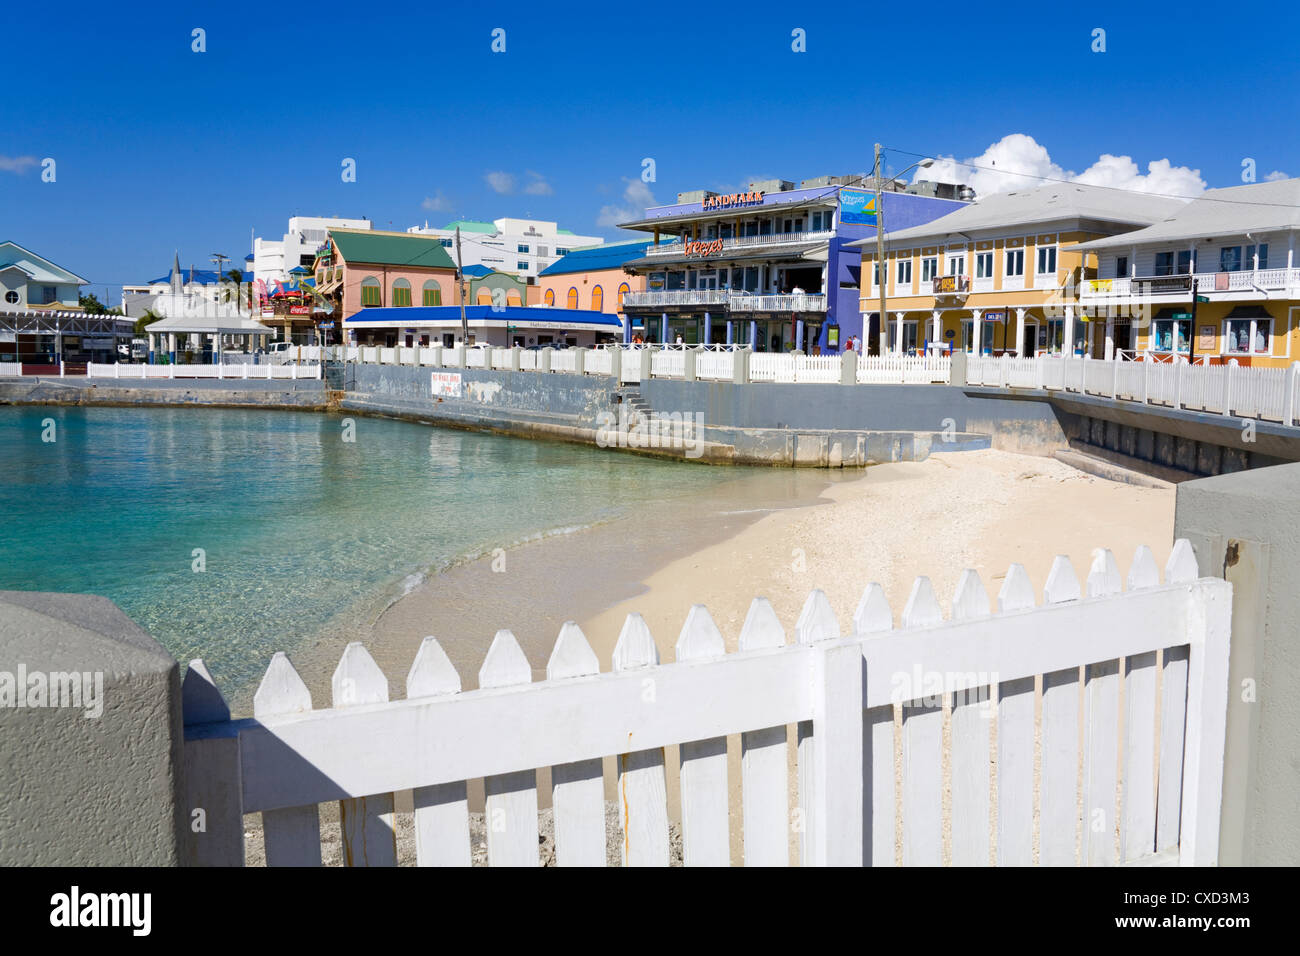 Magasins sur Harbor Drive, George Town, Grand Cayman, îles Caïmans, Antilles, Antilles, Caraïbes, Amérique Centrale Banque D'Images